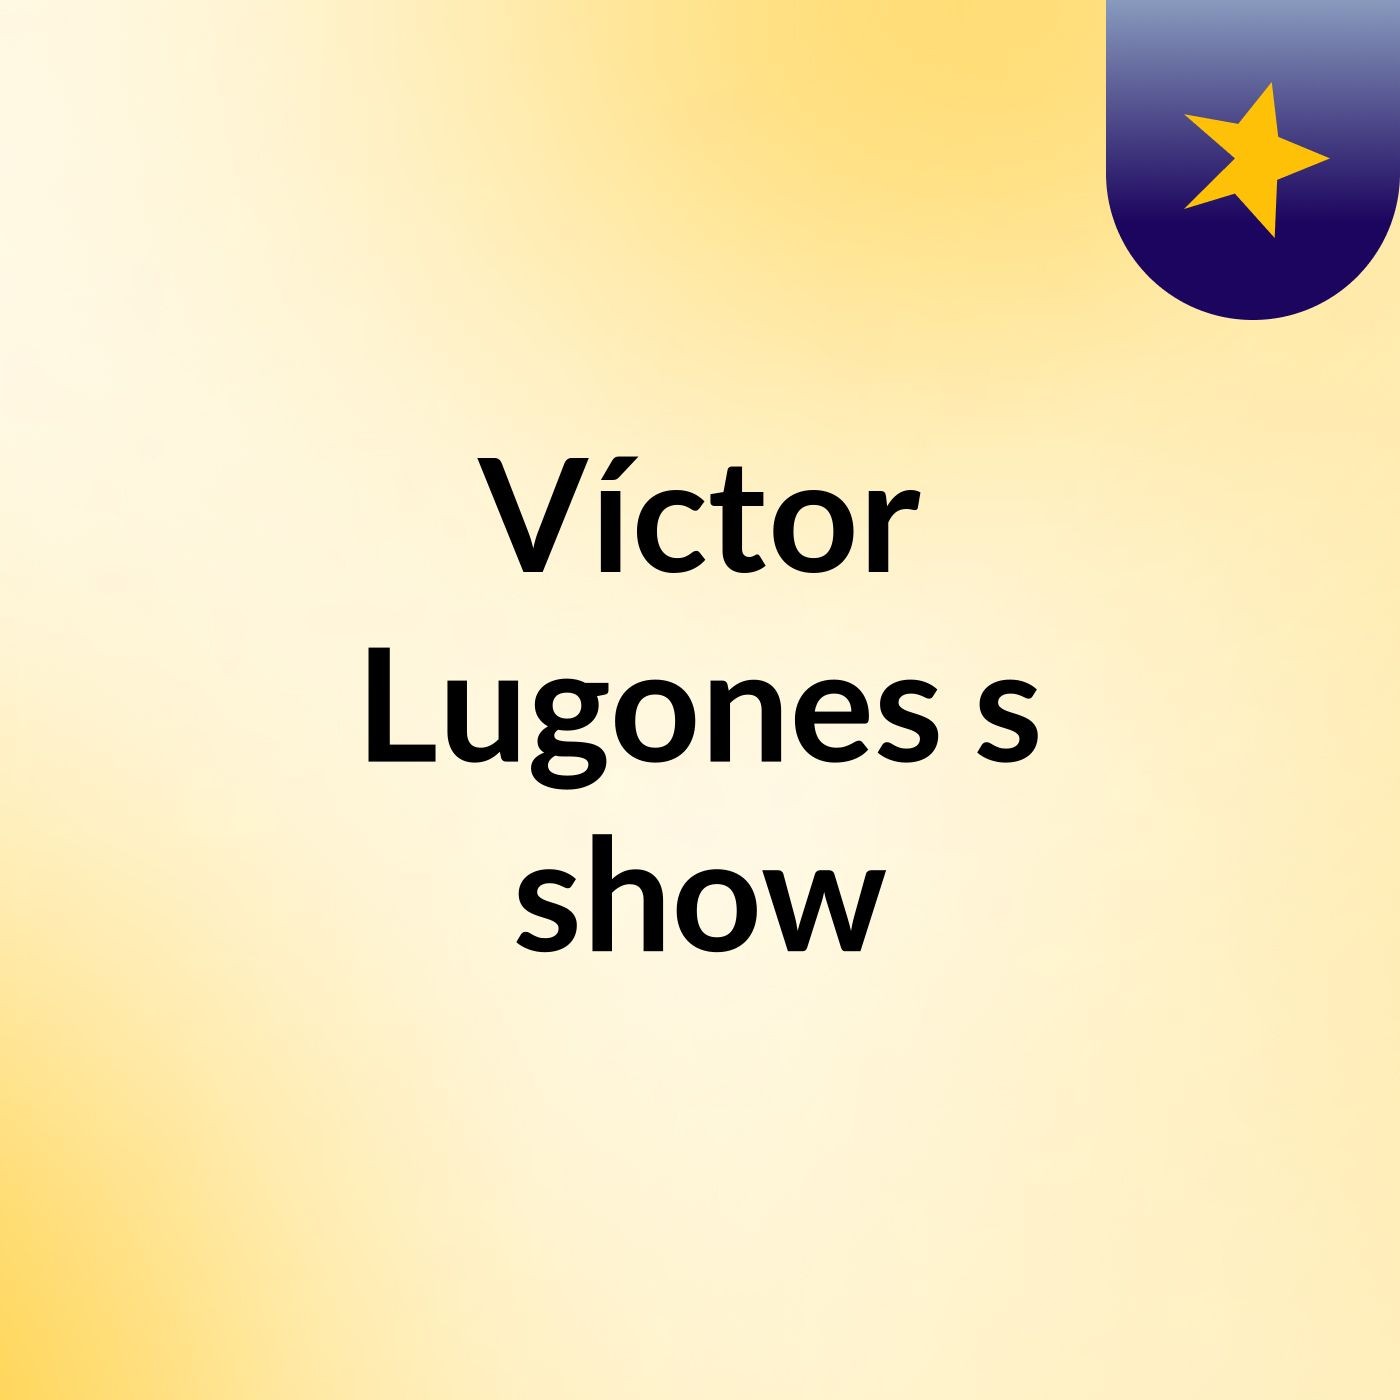 Víctor Lugones's show